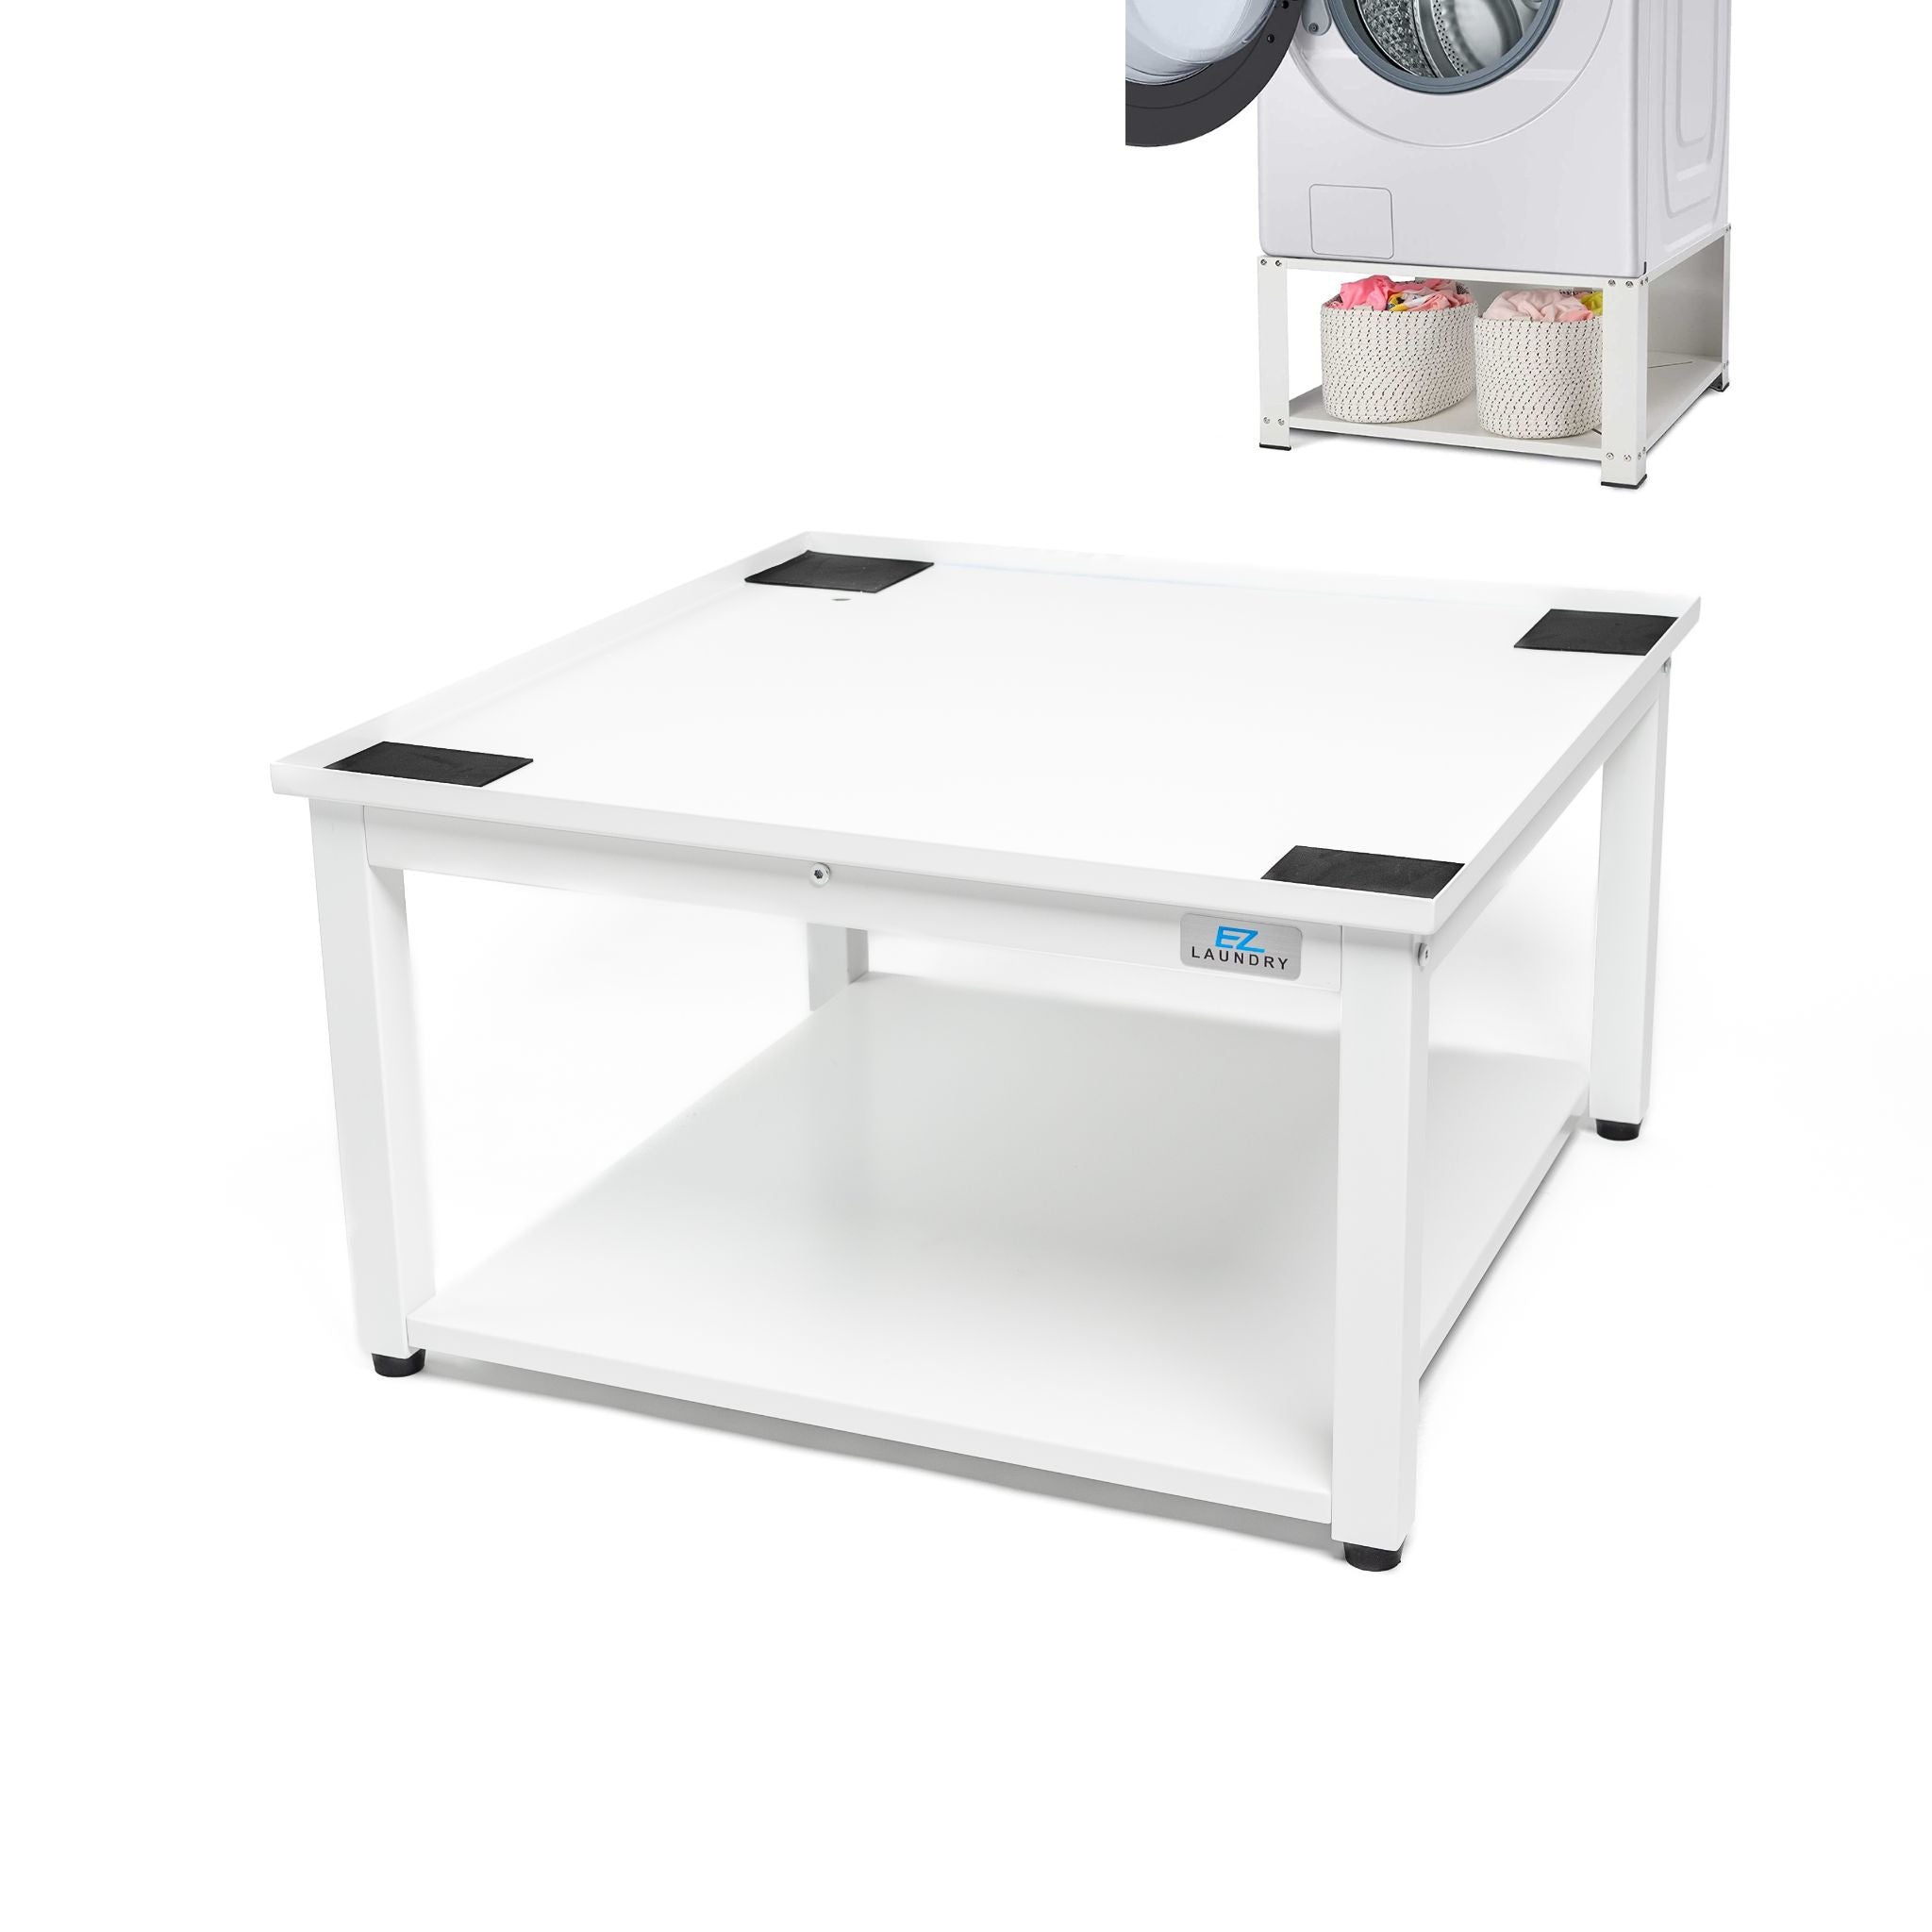 EZ Laundry Pedestal universal mejorado de 28 pulgadas – Capacidad de 700  libras, eleva 16 pulgadas con bandeja de drenaje integrada + manguera,  patas